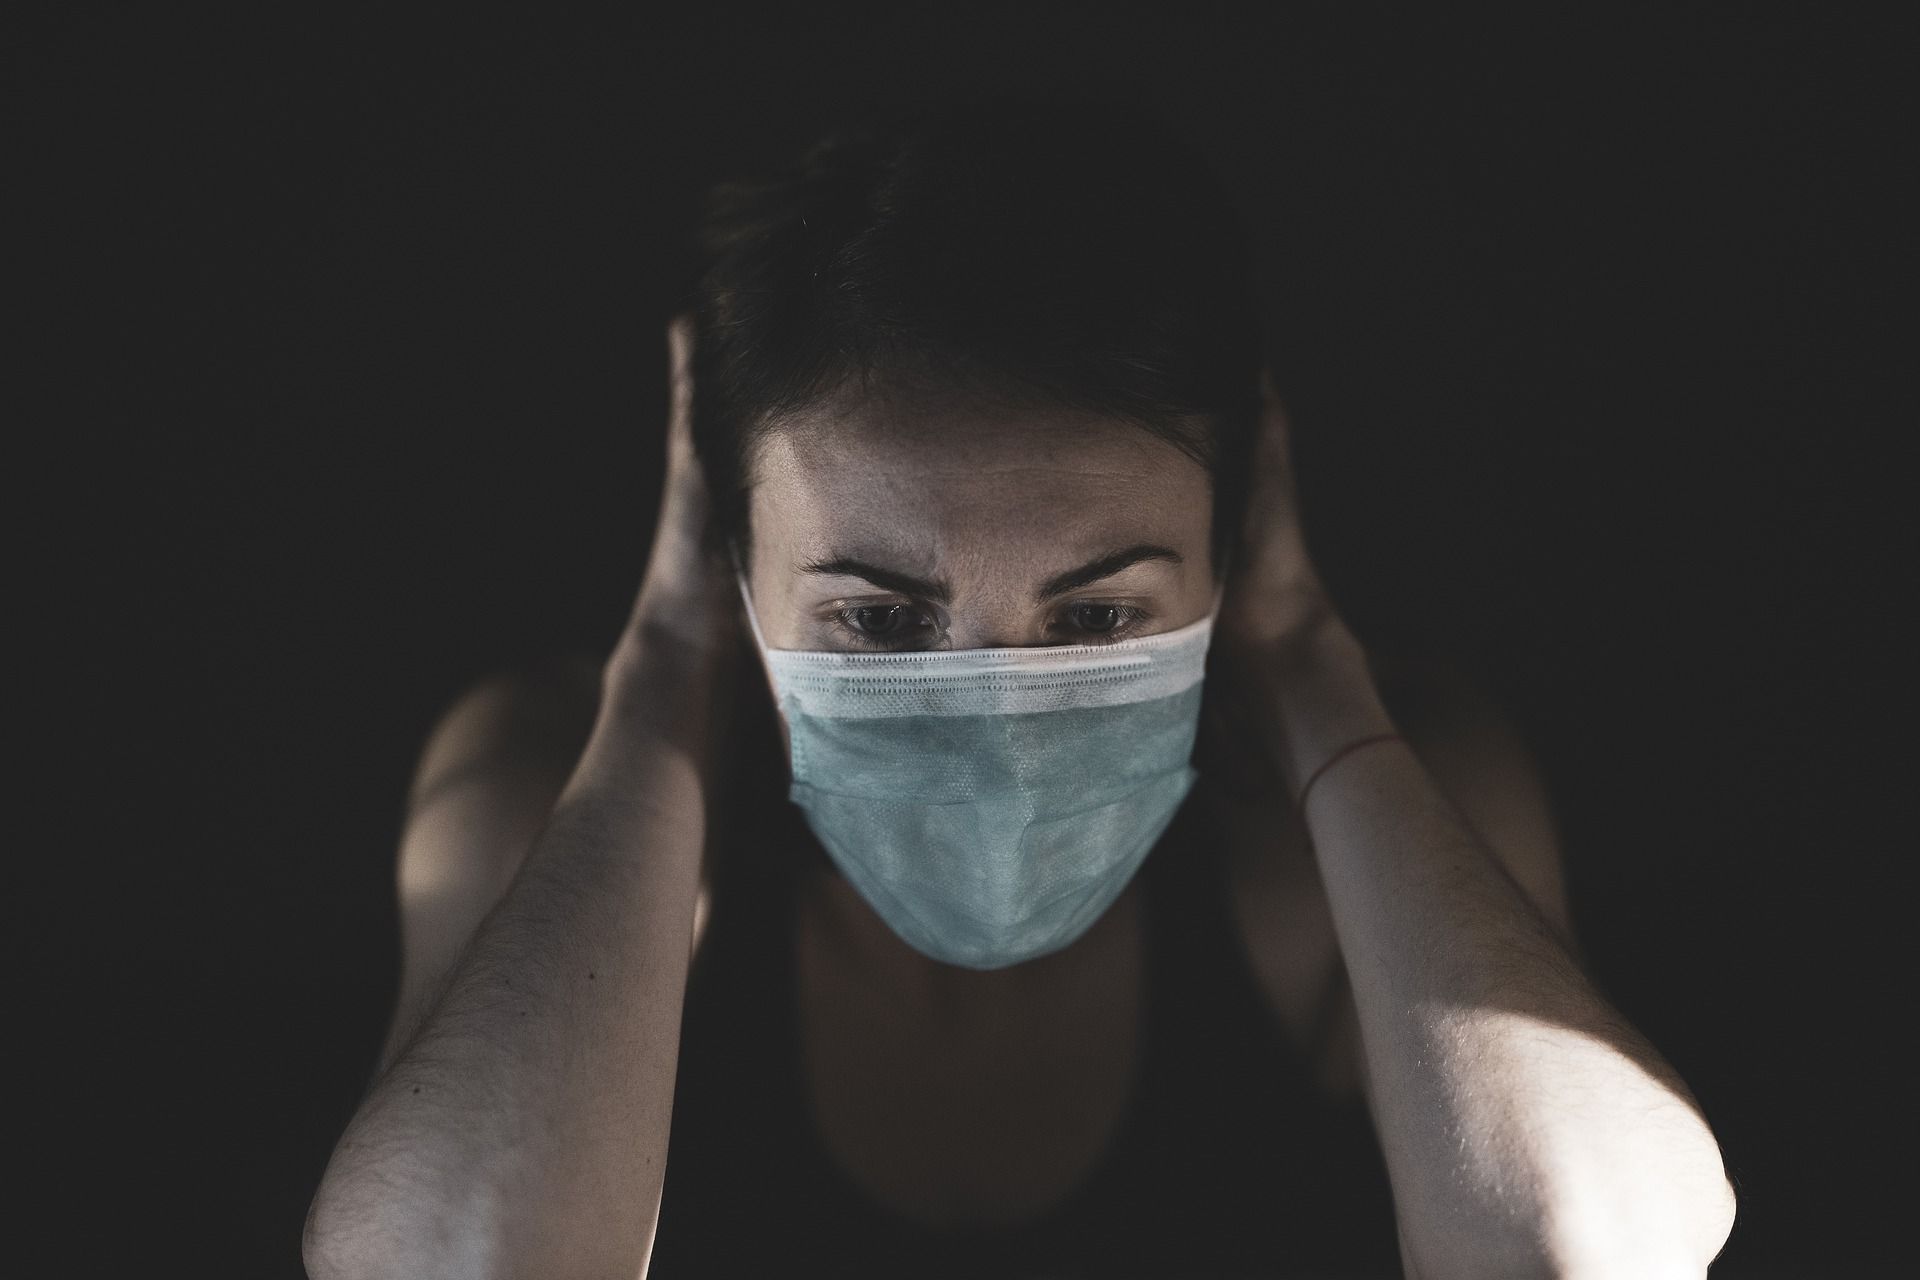 Una persona joven con mascarilla. Cómo la pandemia ha afectado al malestar psicológico / Foto: Engin Akyurt - Pixabay